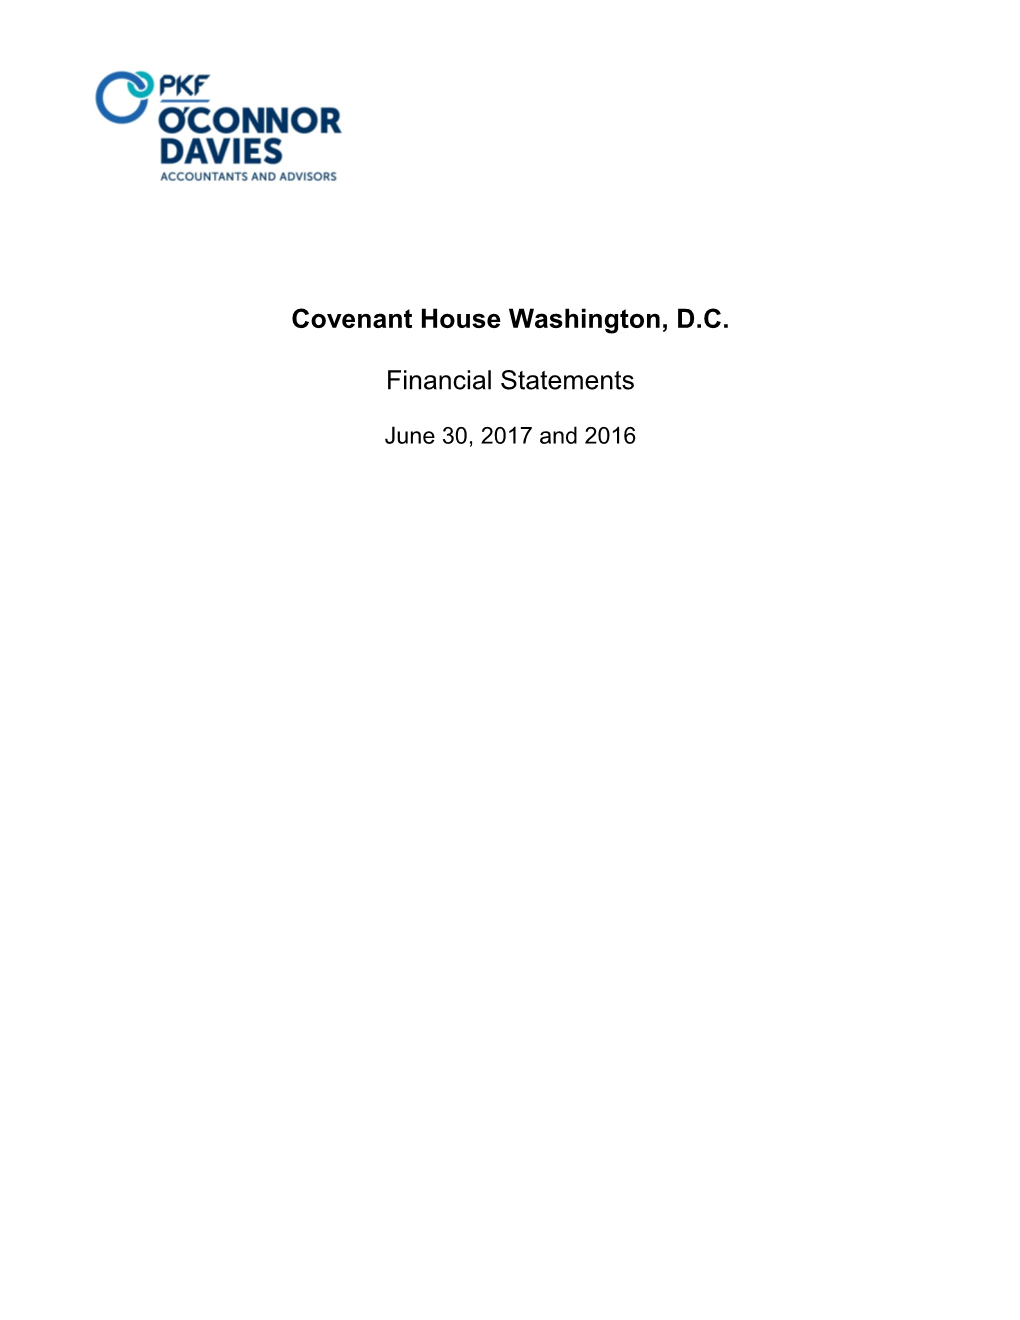 Covenant House Washington, D.C. Financial Statements